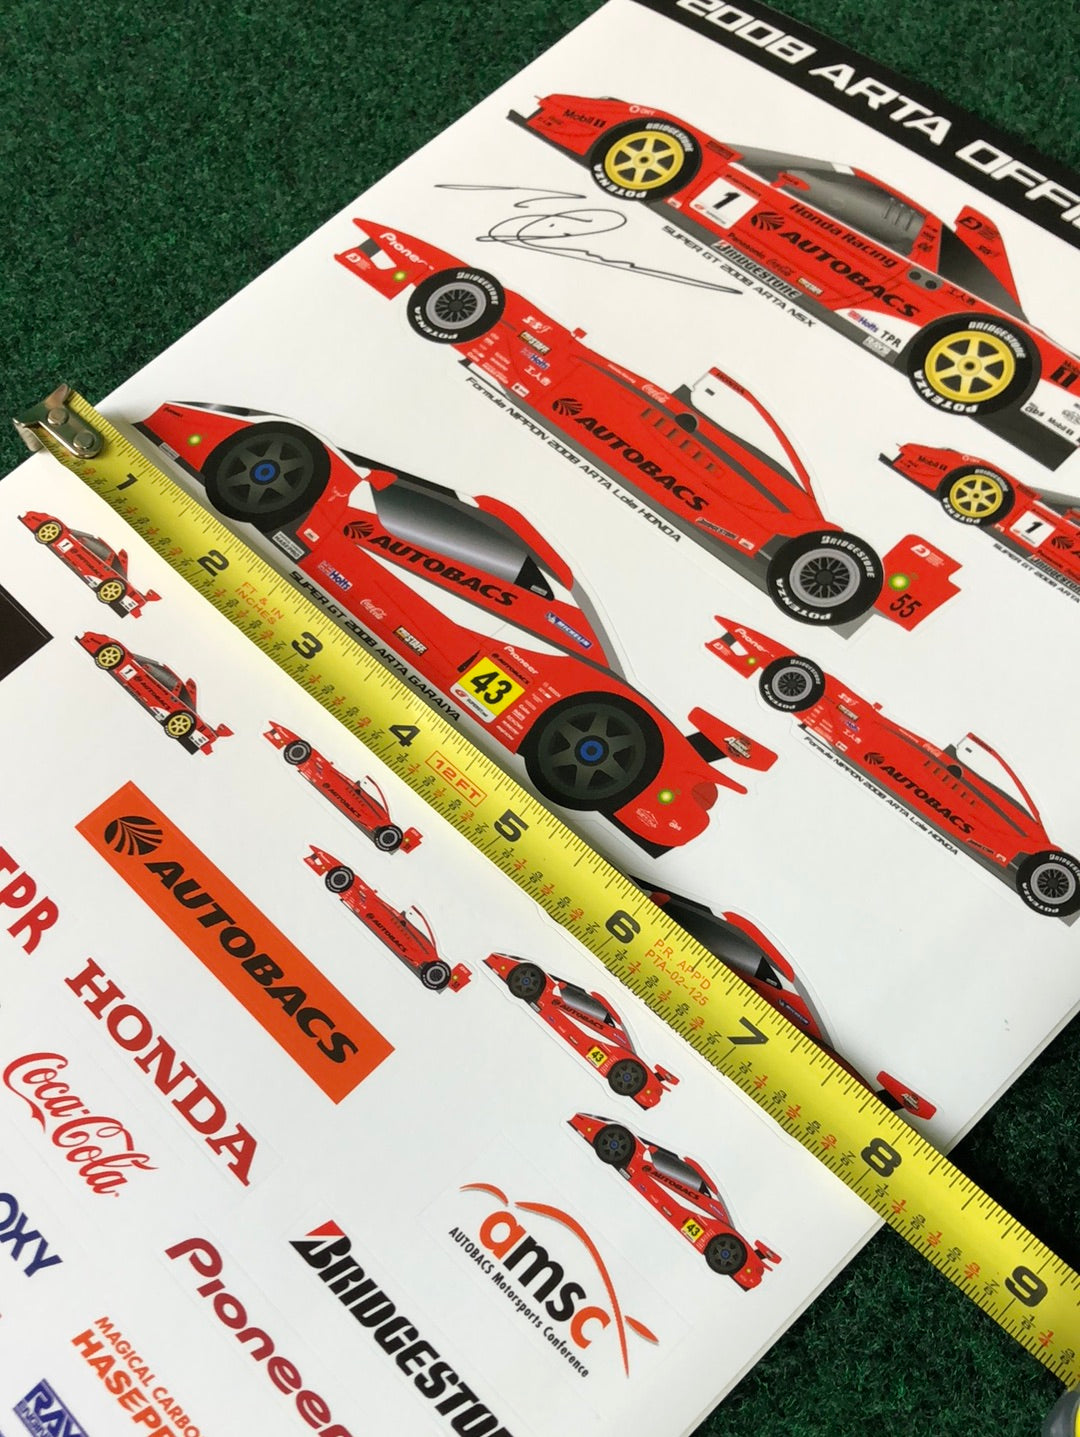 2008 Super GT ARTA Official Autographed Sticker Sheet